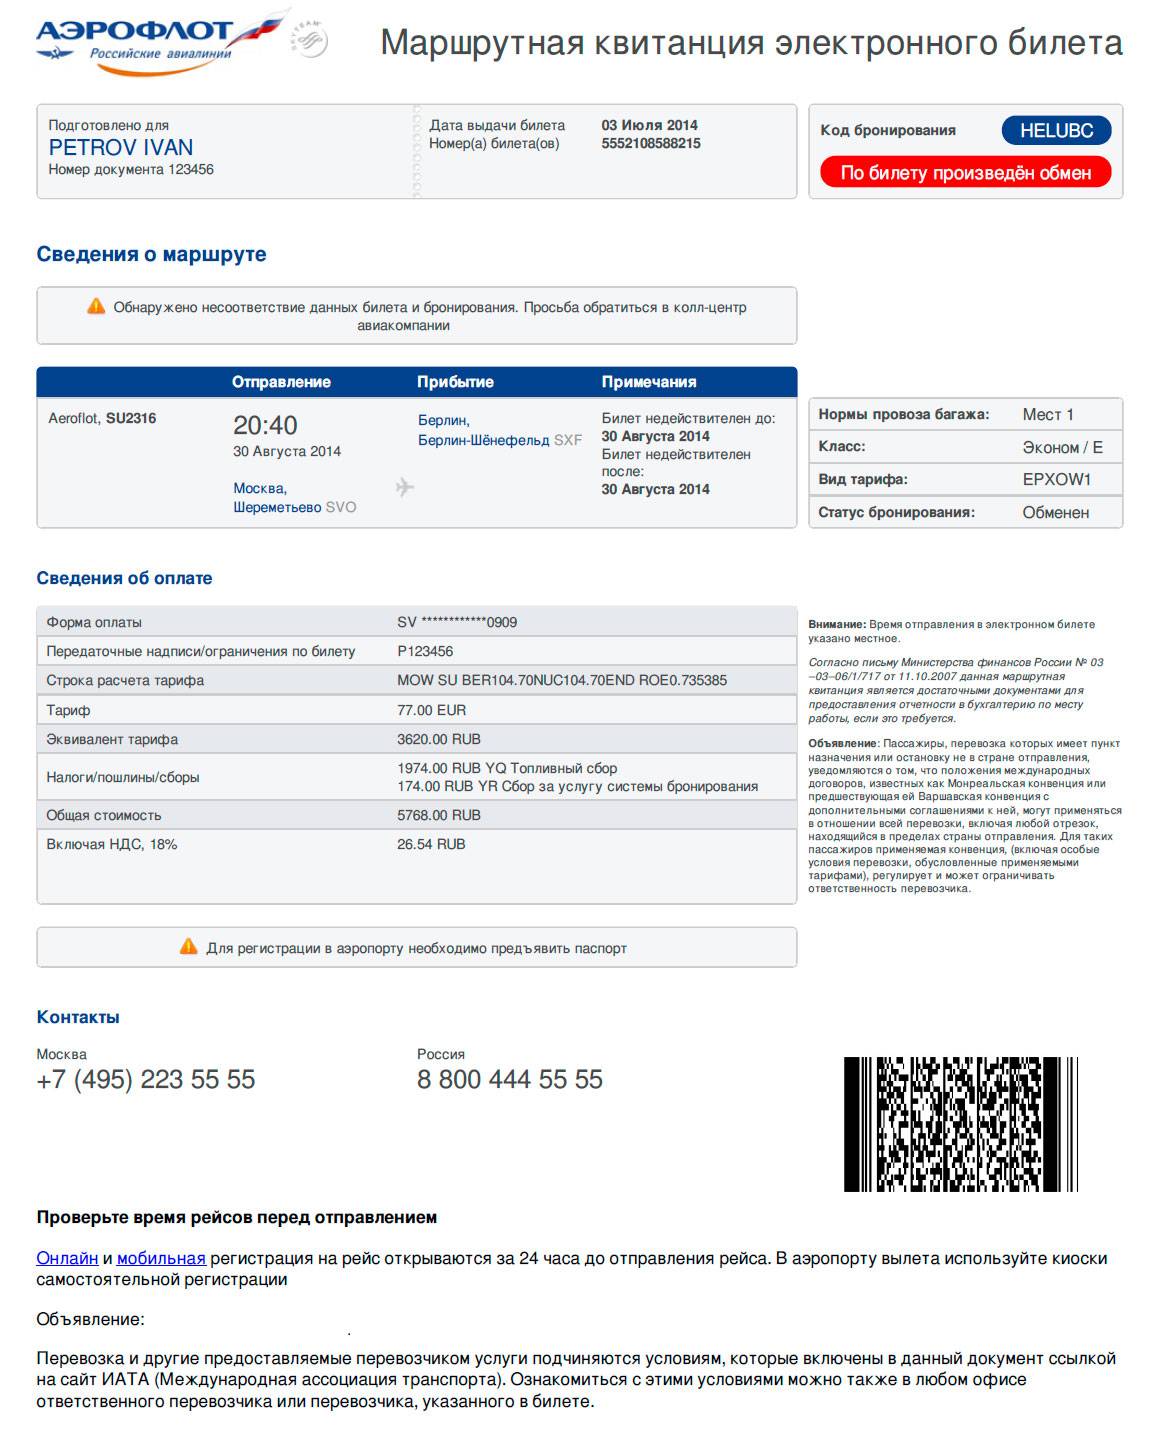 Блог елены исхаковой
как распечатать электронный билет на самолет: инструкция